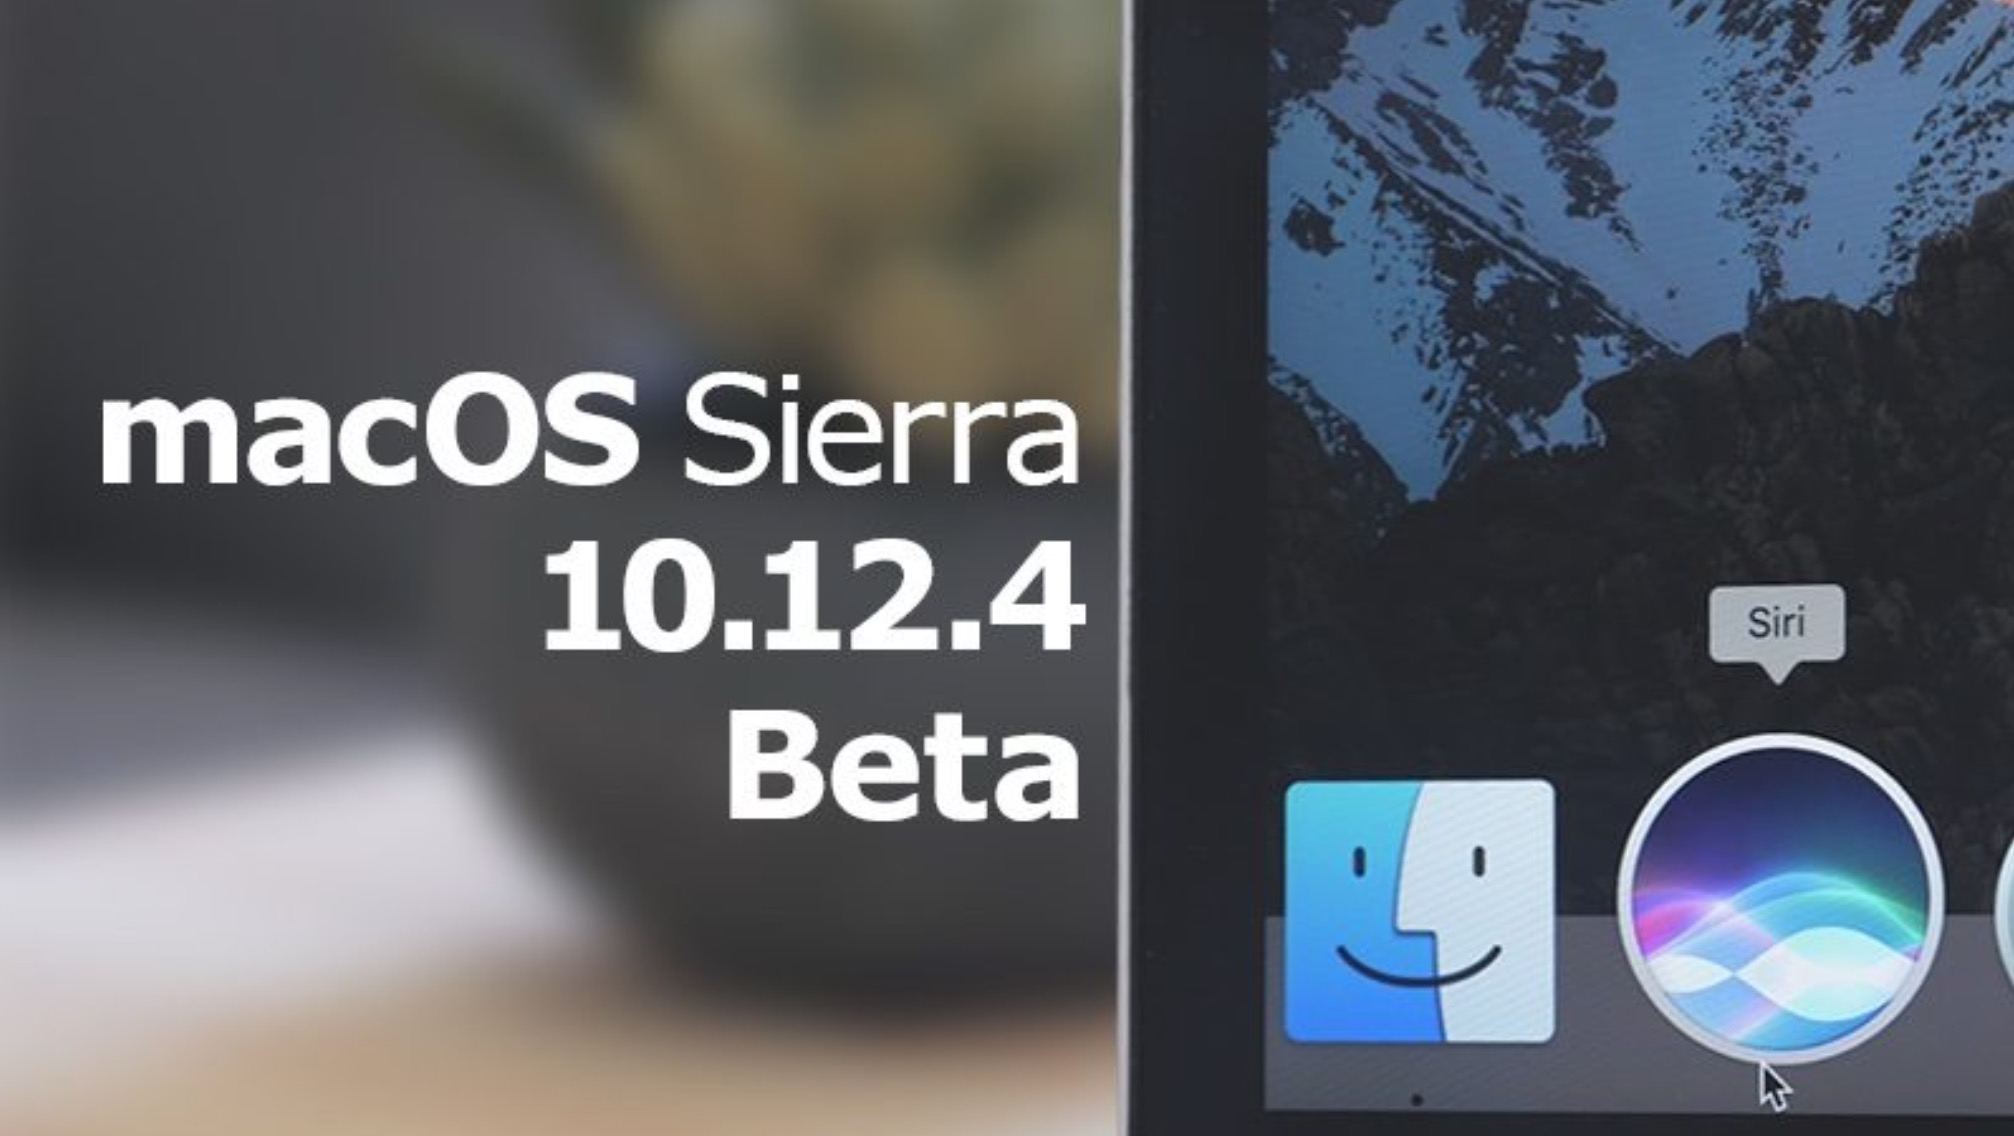 macOS Sierra 10.12.4 beta